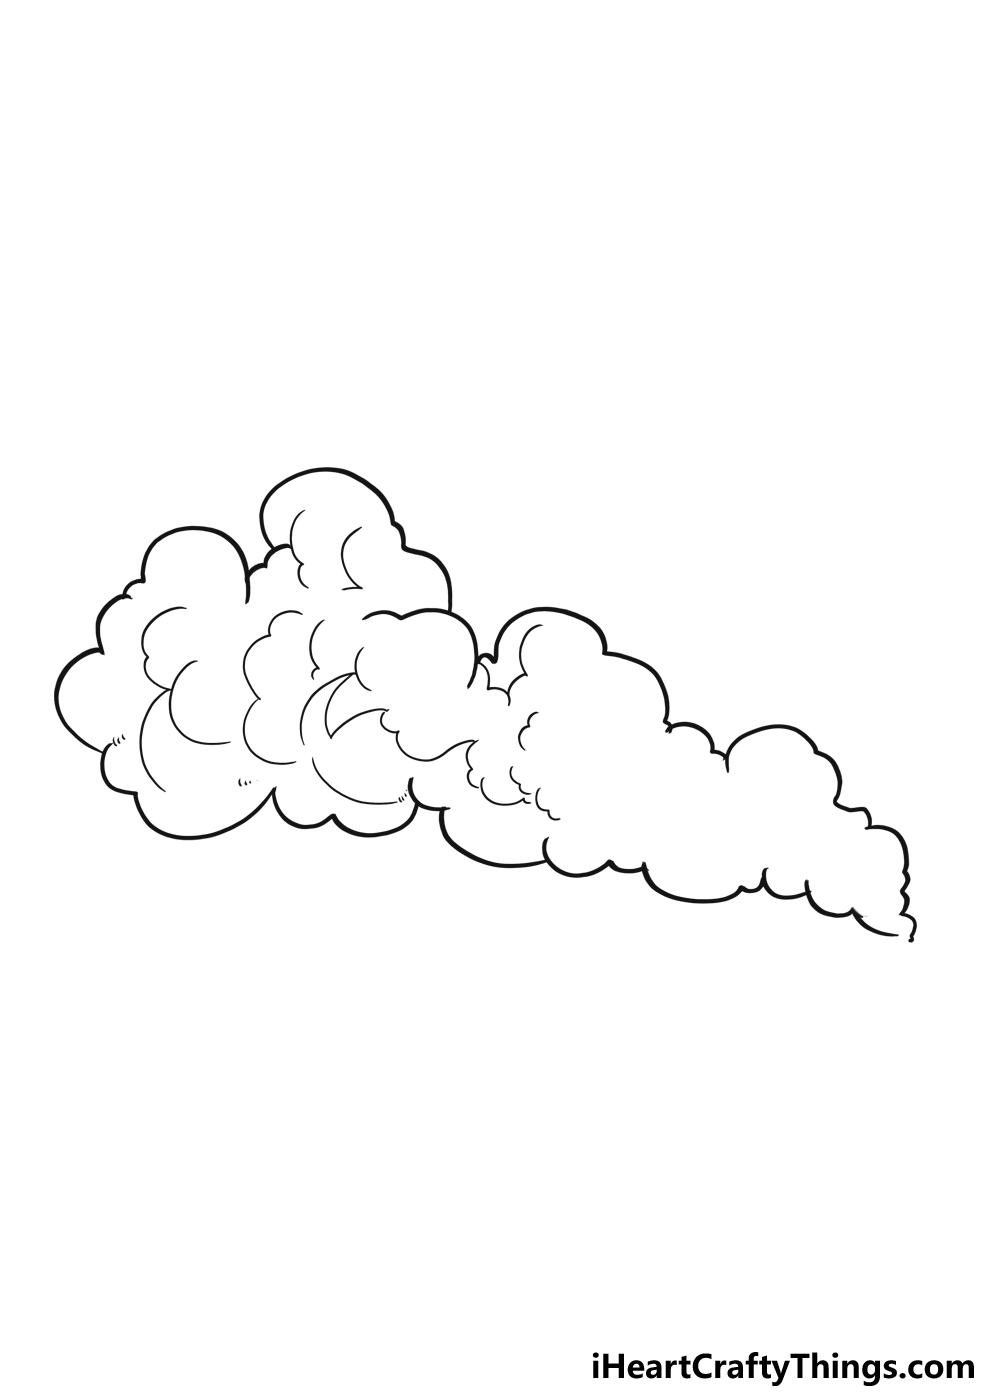 How to Draw Smoke step 4